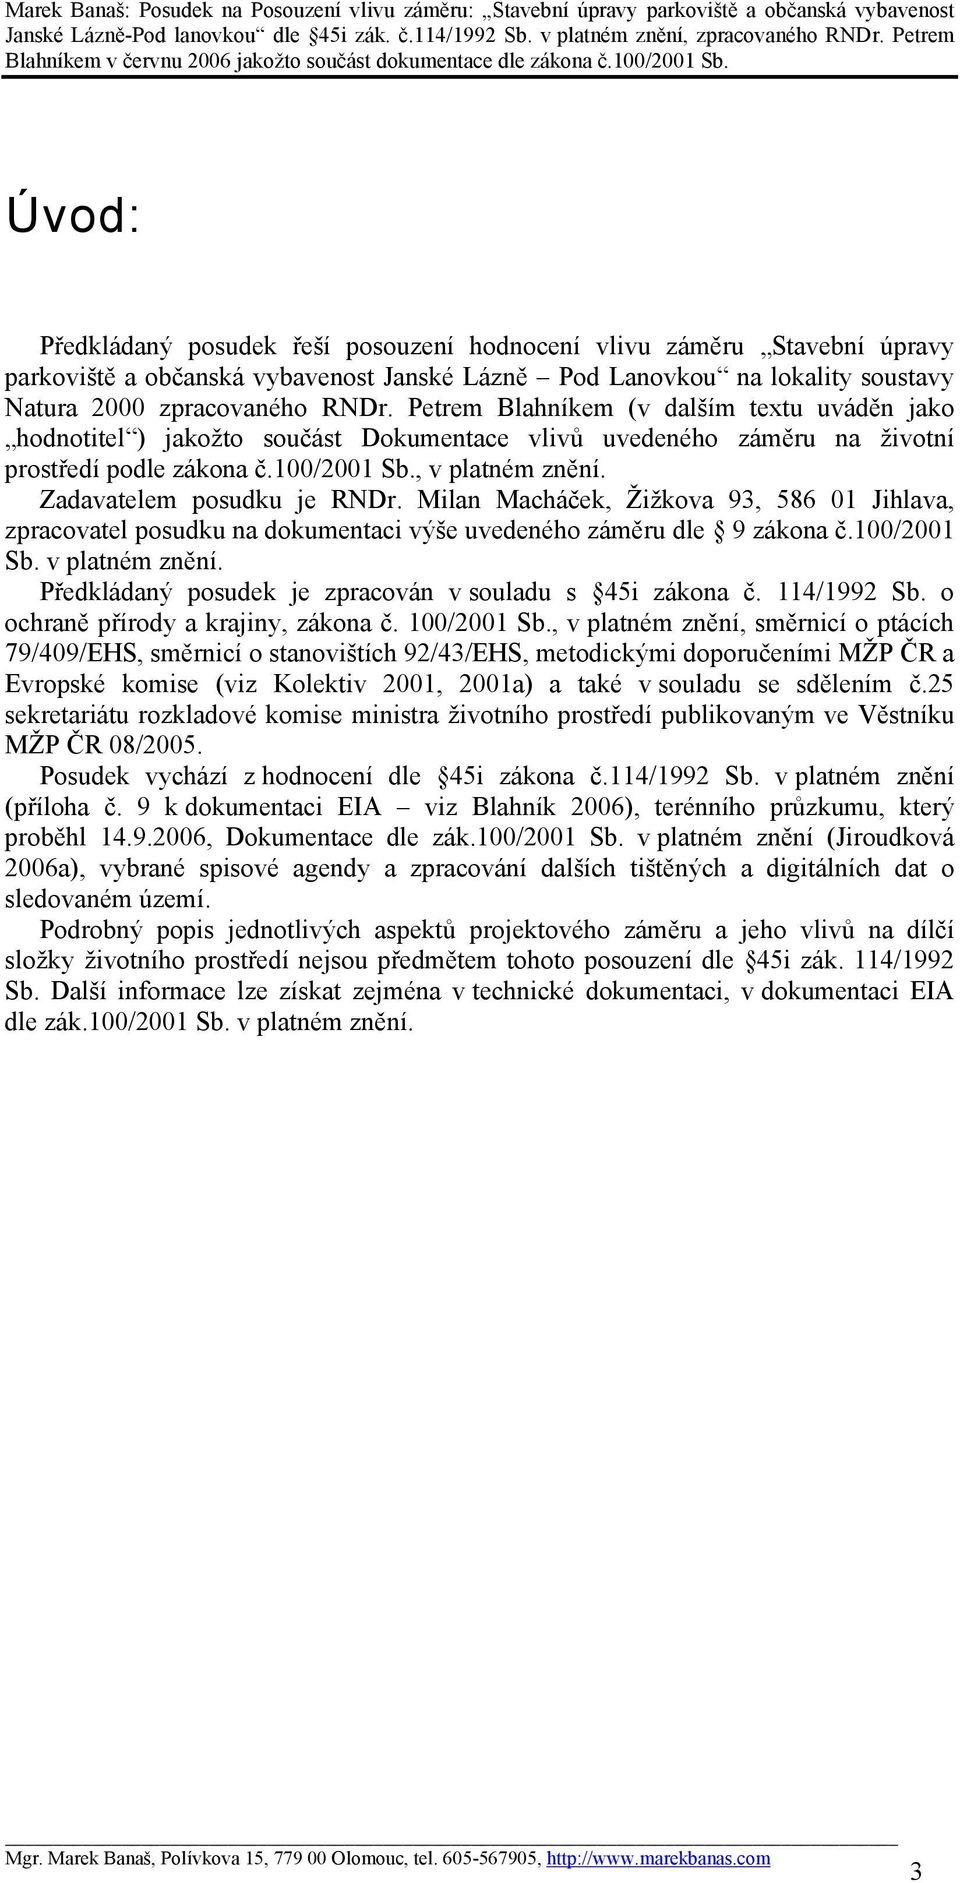 Zadavatelem posudku je RNDr. Milan Macháček, Žižkova 93, 586 01 Jihlava, zpracovatel posudku na dokumentaci výše uvedeného záměru dle 9 zákona č.100/2001 Sb. v platném znění.